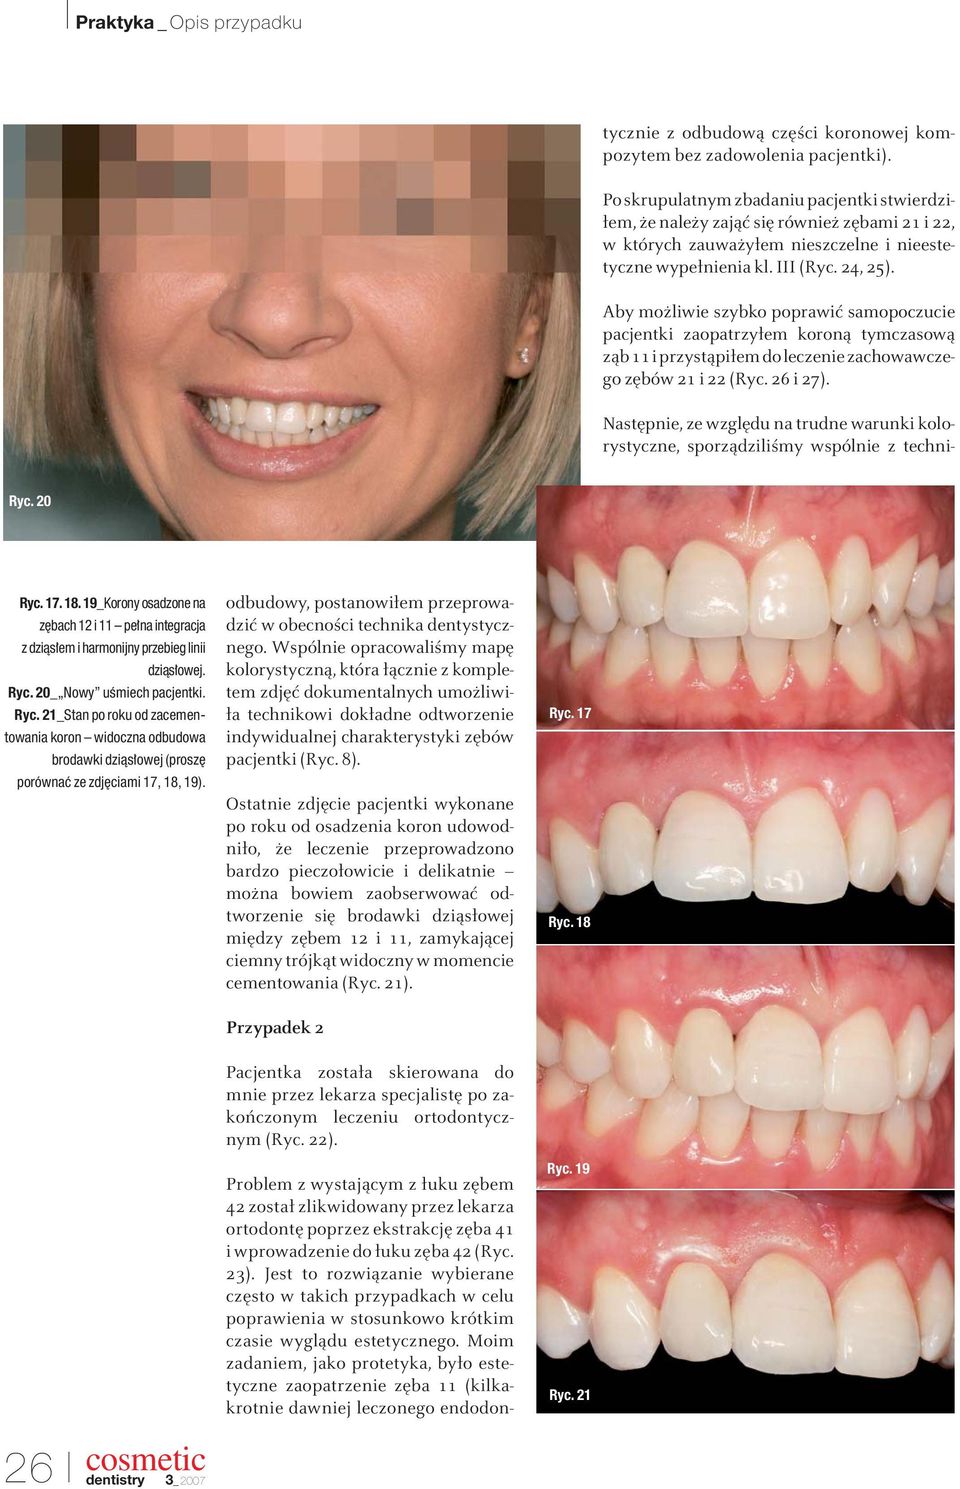 Moim zadaniem, jako protetyka, było estetyczne zaopatrzenie zęba 11 (kilkakrotnie dawniej leczonego endodontycznie z odbudową części koronowej kompozytem bez zadowolenia pacjentki).